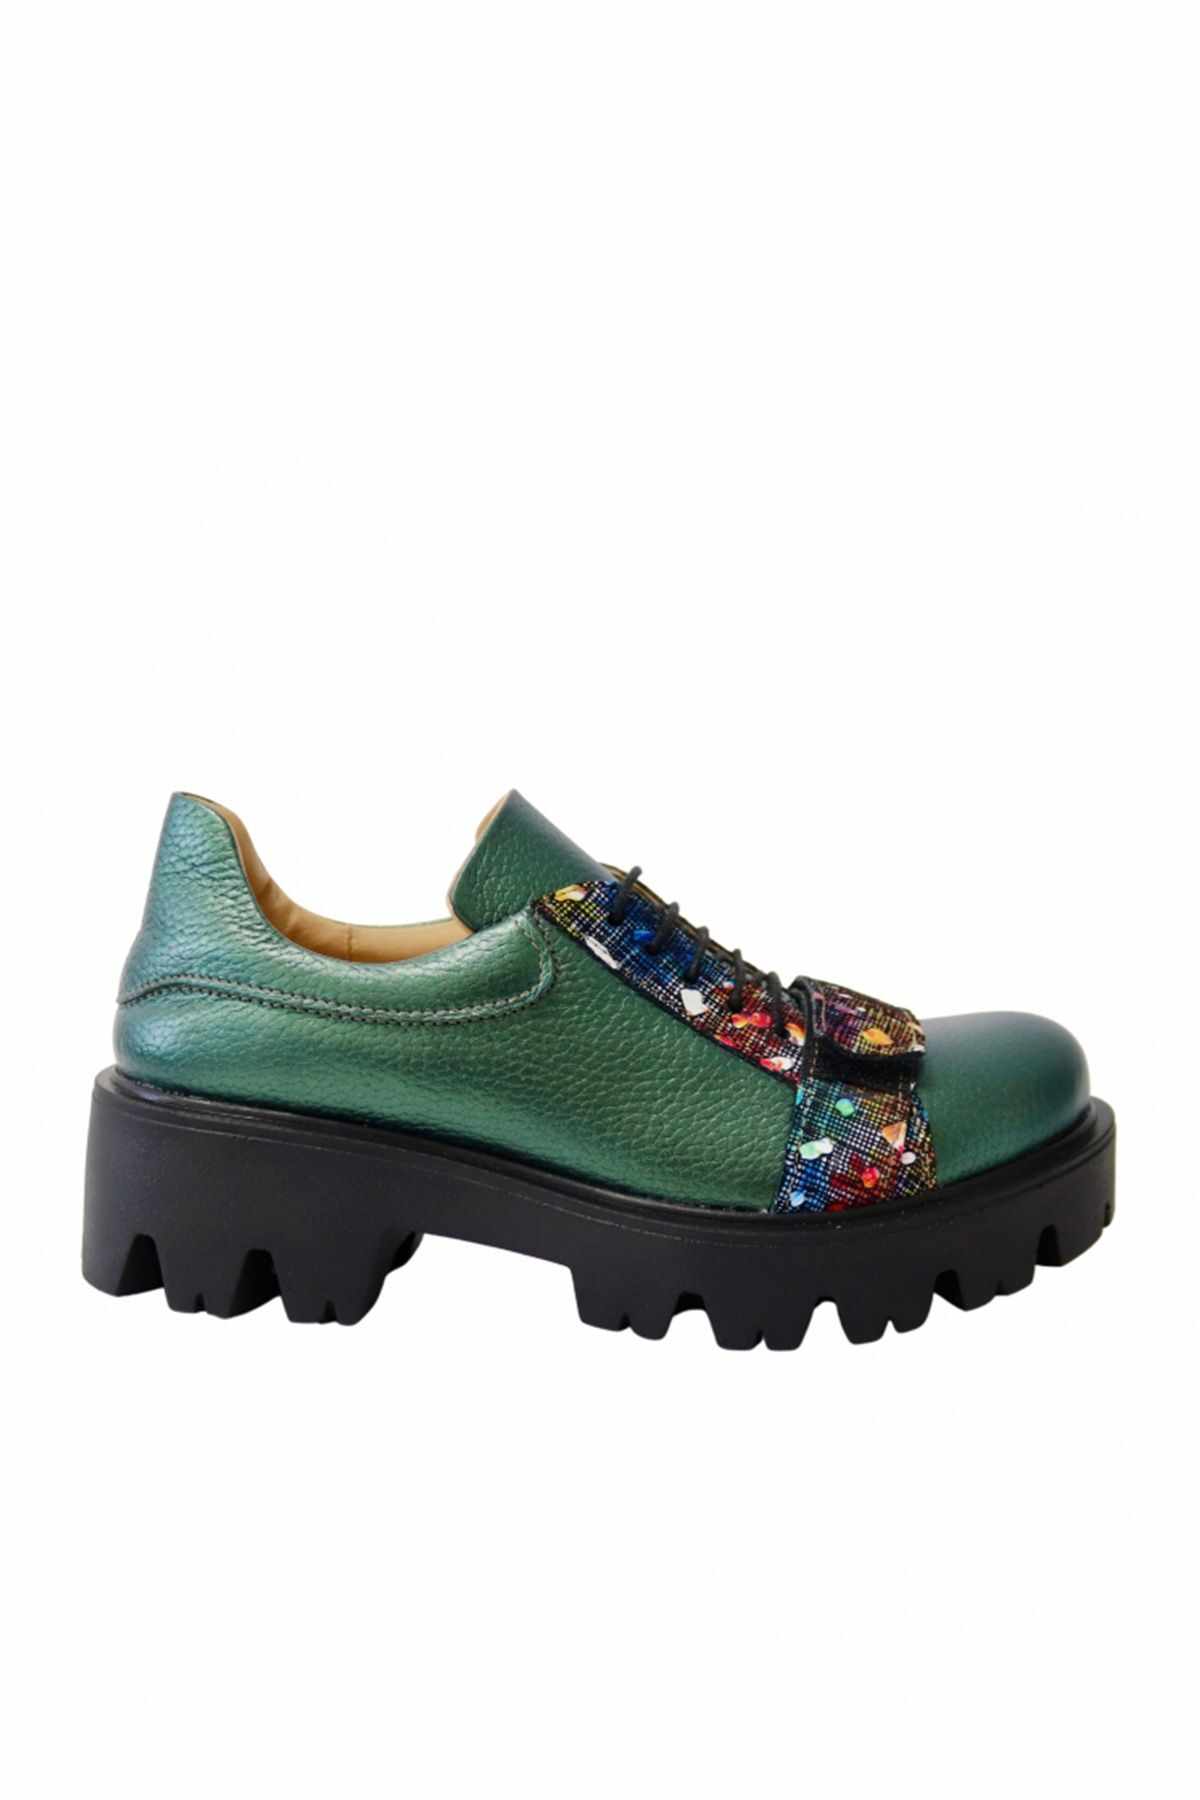 Pantofi casual Aimee verzi din piele naturala cu print multicolor